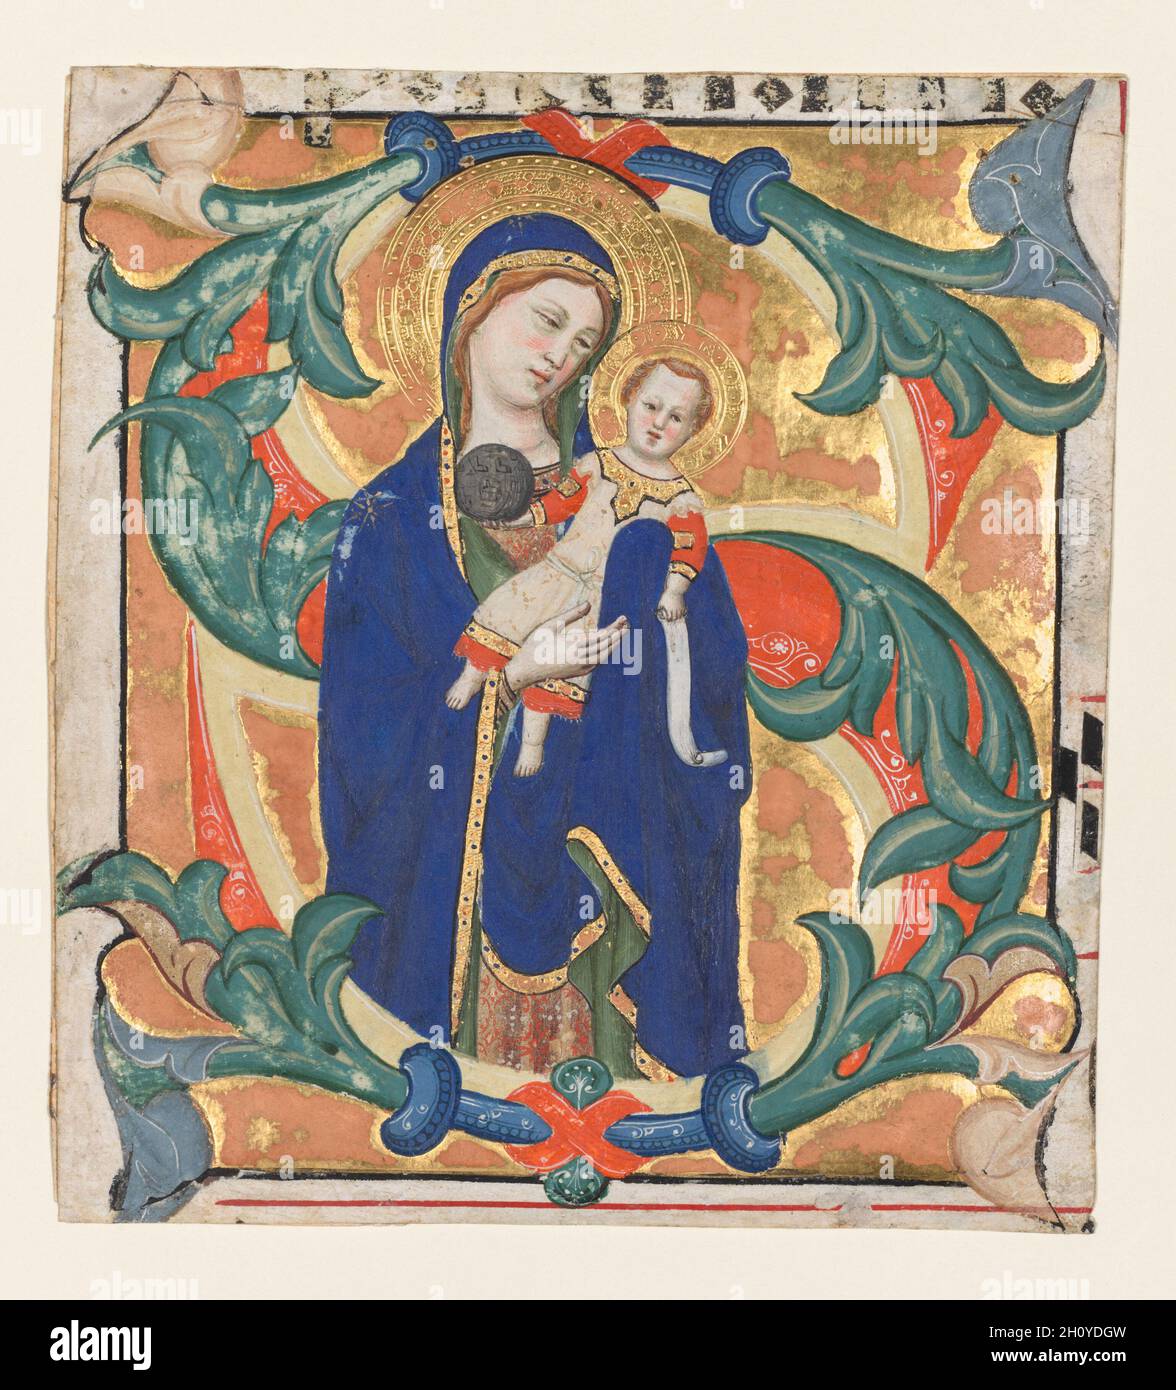 Initial S[alve sancta parens] aus einem allmählichen: Madonna und Kind, c. 1370-1374. Don Silvestro dei Gherarducci (Italienisch, 1339-1399). Tinte, Tempera und Gold auf Pergament; Blatt: 16 x 13 cm (6 5/16 x 5 1/8 Zoll). Zusammen mit mehreren anderen ausgestanzten Blättern und Miniaturen, die in verschiedenen Bibliotheken und Museen erhalten sind, war dieses verzierte Initial S Teil eines prächtigen Graduals, das im Skriptorium des Klosters Santa Maria degli Angeli in Florenz hergestellt wurde. Die Madonna mit dem Kind war ein Standardbild für die samstags-Votivmesse an die Jungfrau Maria. Diese Initiale führte ursprünglich den Text ein: Salve sancta pa Stockfoto